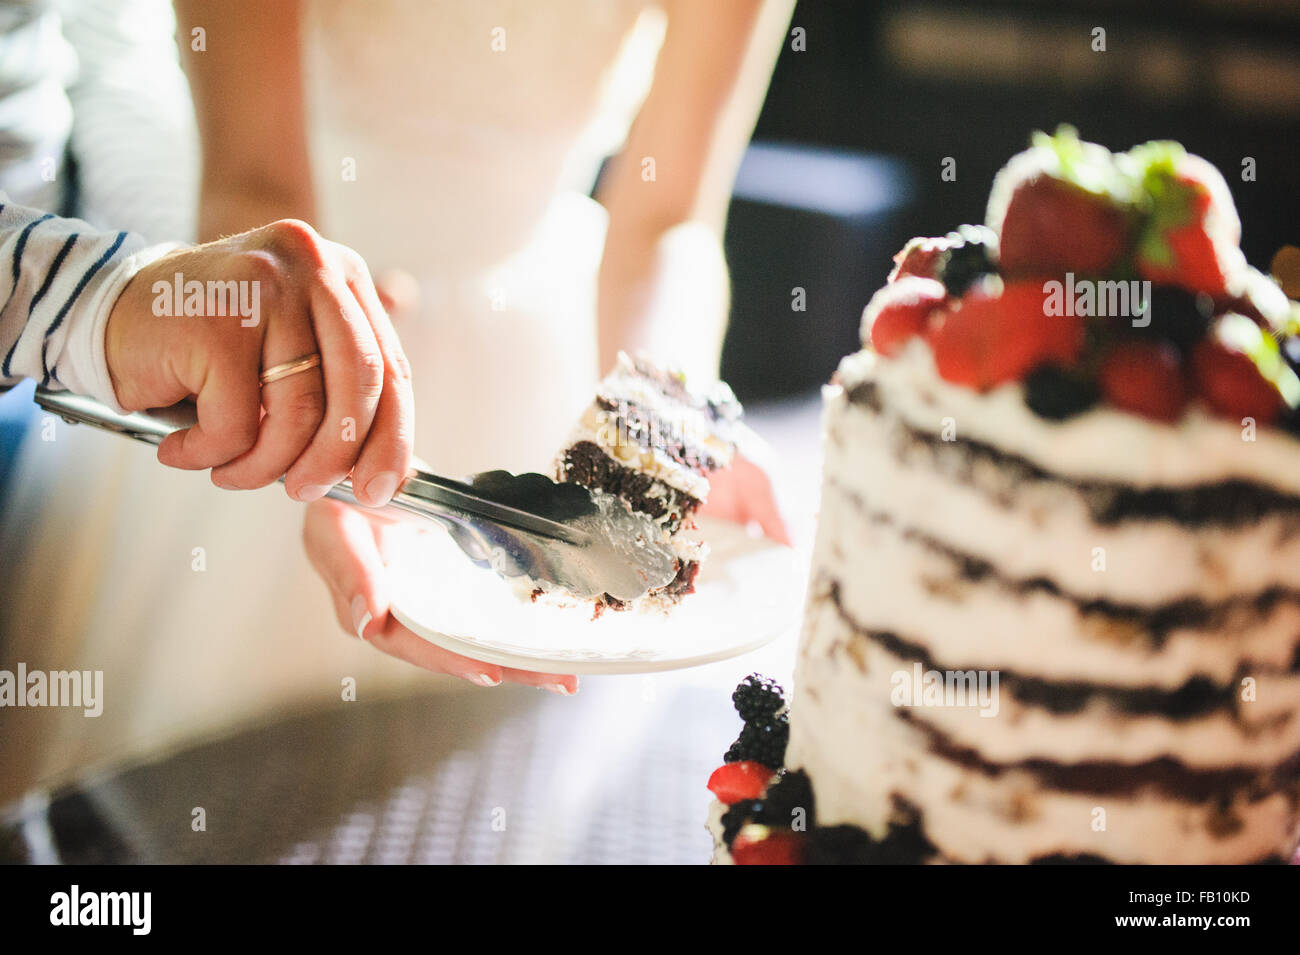 Mariée et le marié sont de trancher le gâteau de mariage à la réception Banque D'Images